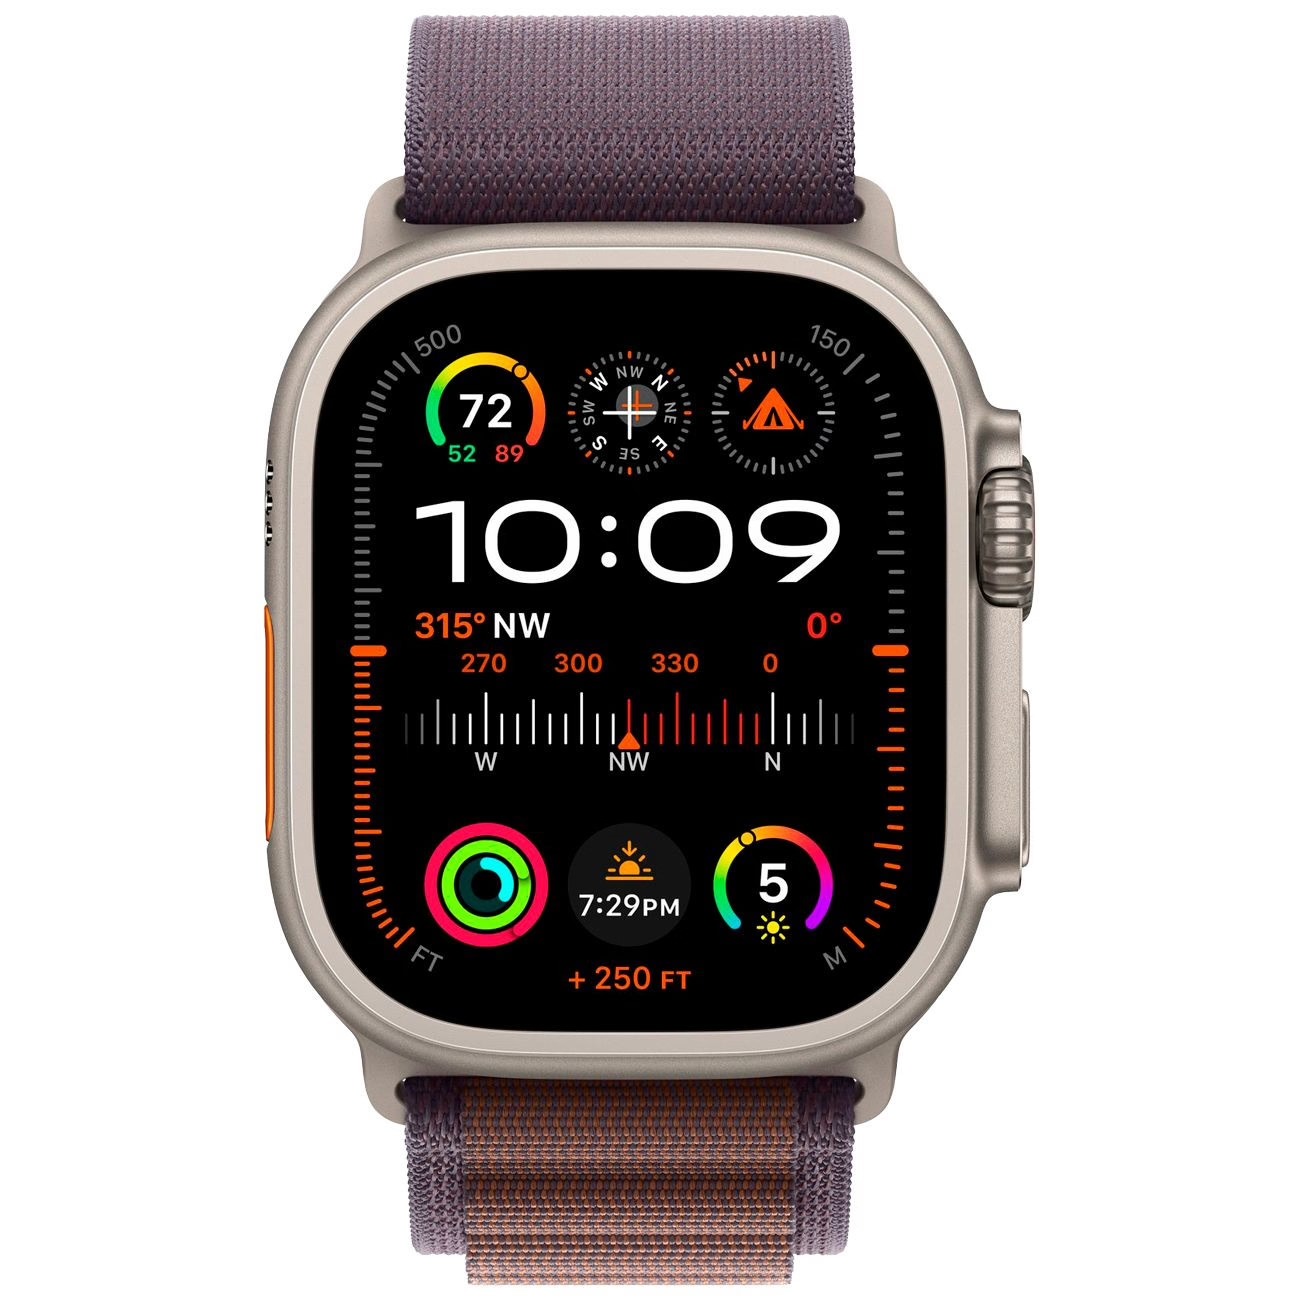 Купить смарт-часы apple watch ultra 2 alpine loop indigo Apple Watch Ultra 2 в официальном магазине Apple, Samsung, Xiaomi. iPixel.ru Купить, заказ, кредит, рассрочка, отзывы,  характеристики, цена,  фотографии, в подарок.